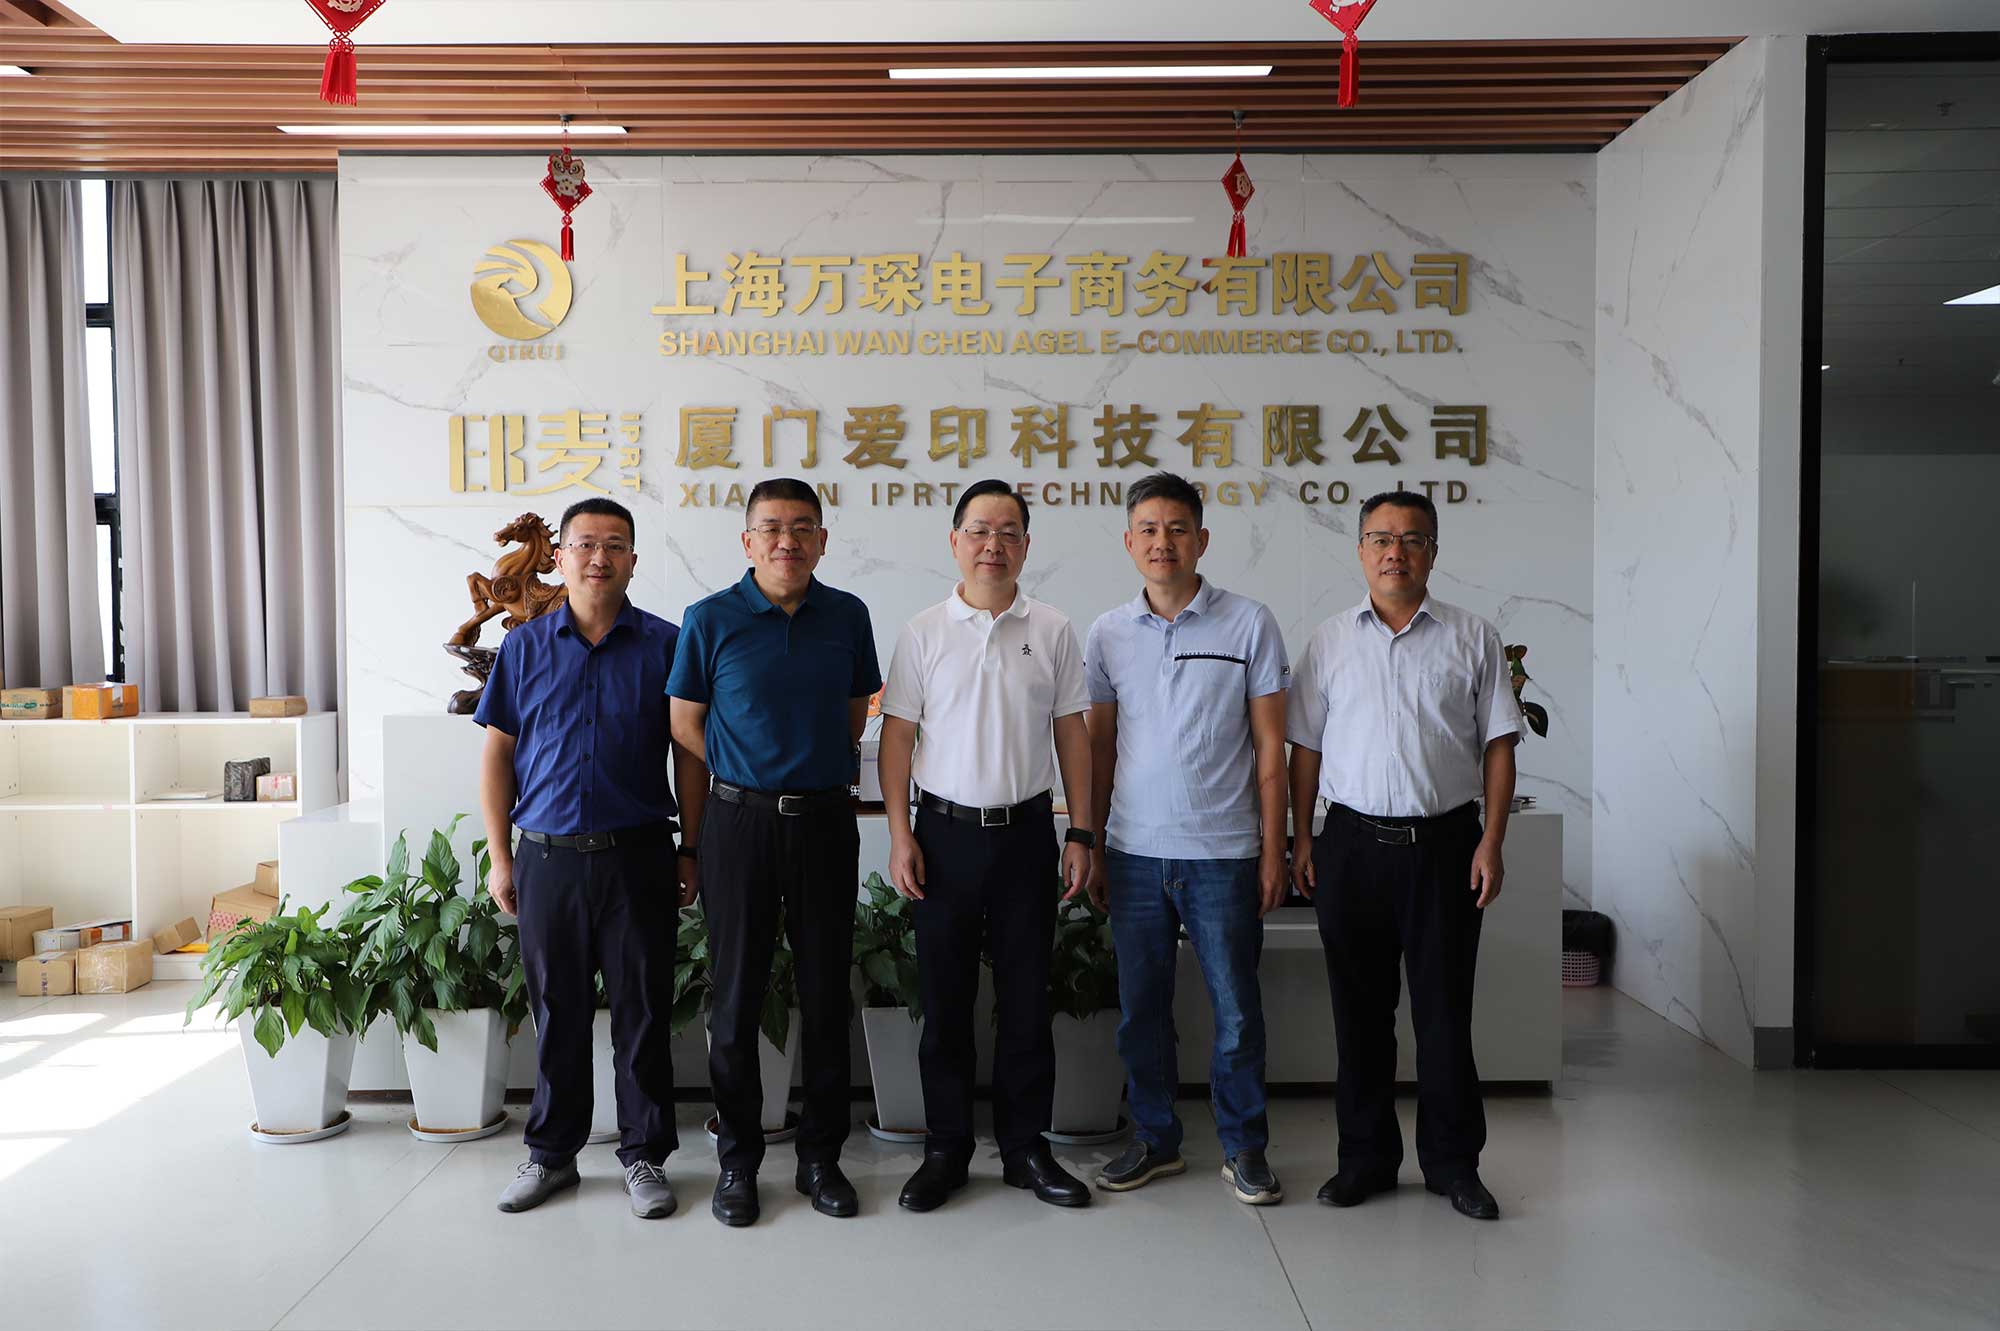 Il vicepresidente di Xiamen CPPCC Li Qinhui e altri hanno visitato IPRT Technology per indagini e guida